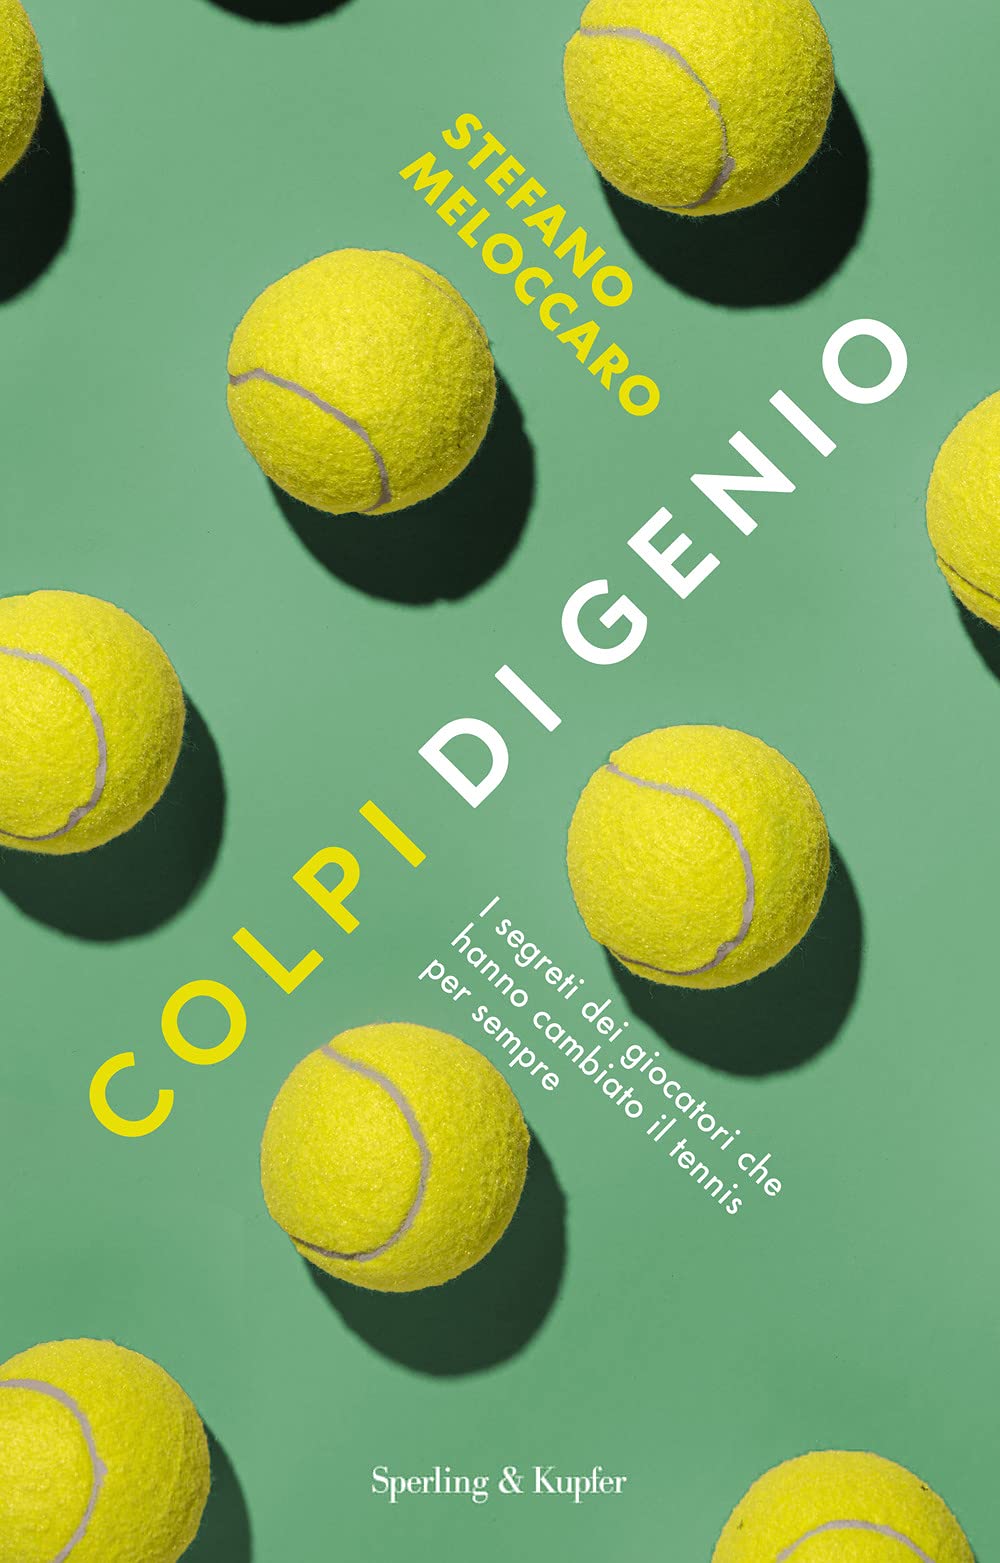 Colpi di genio, recensione libro tennis